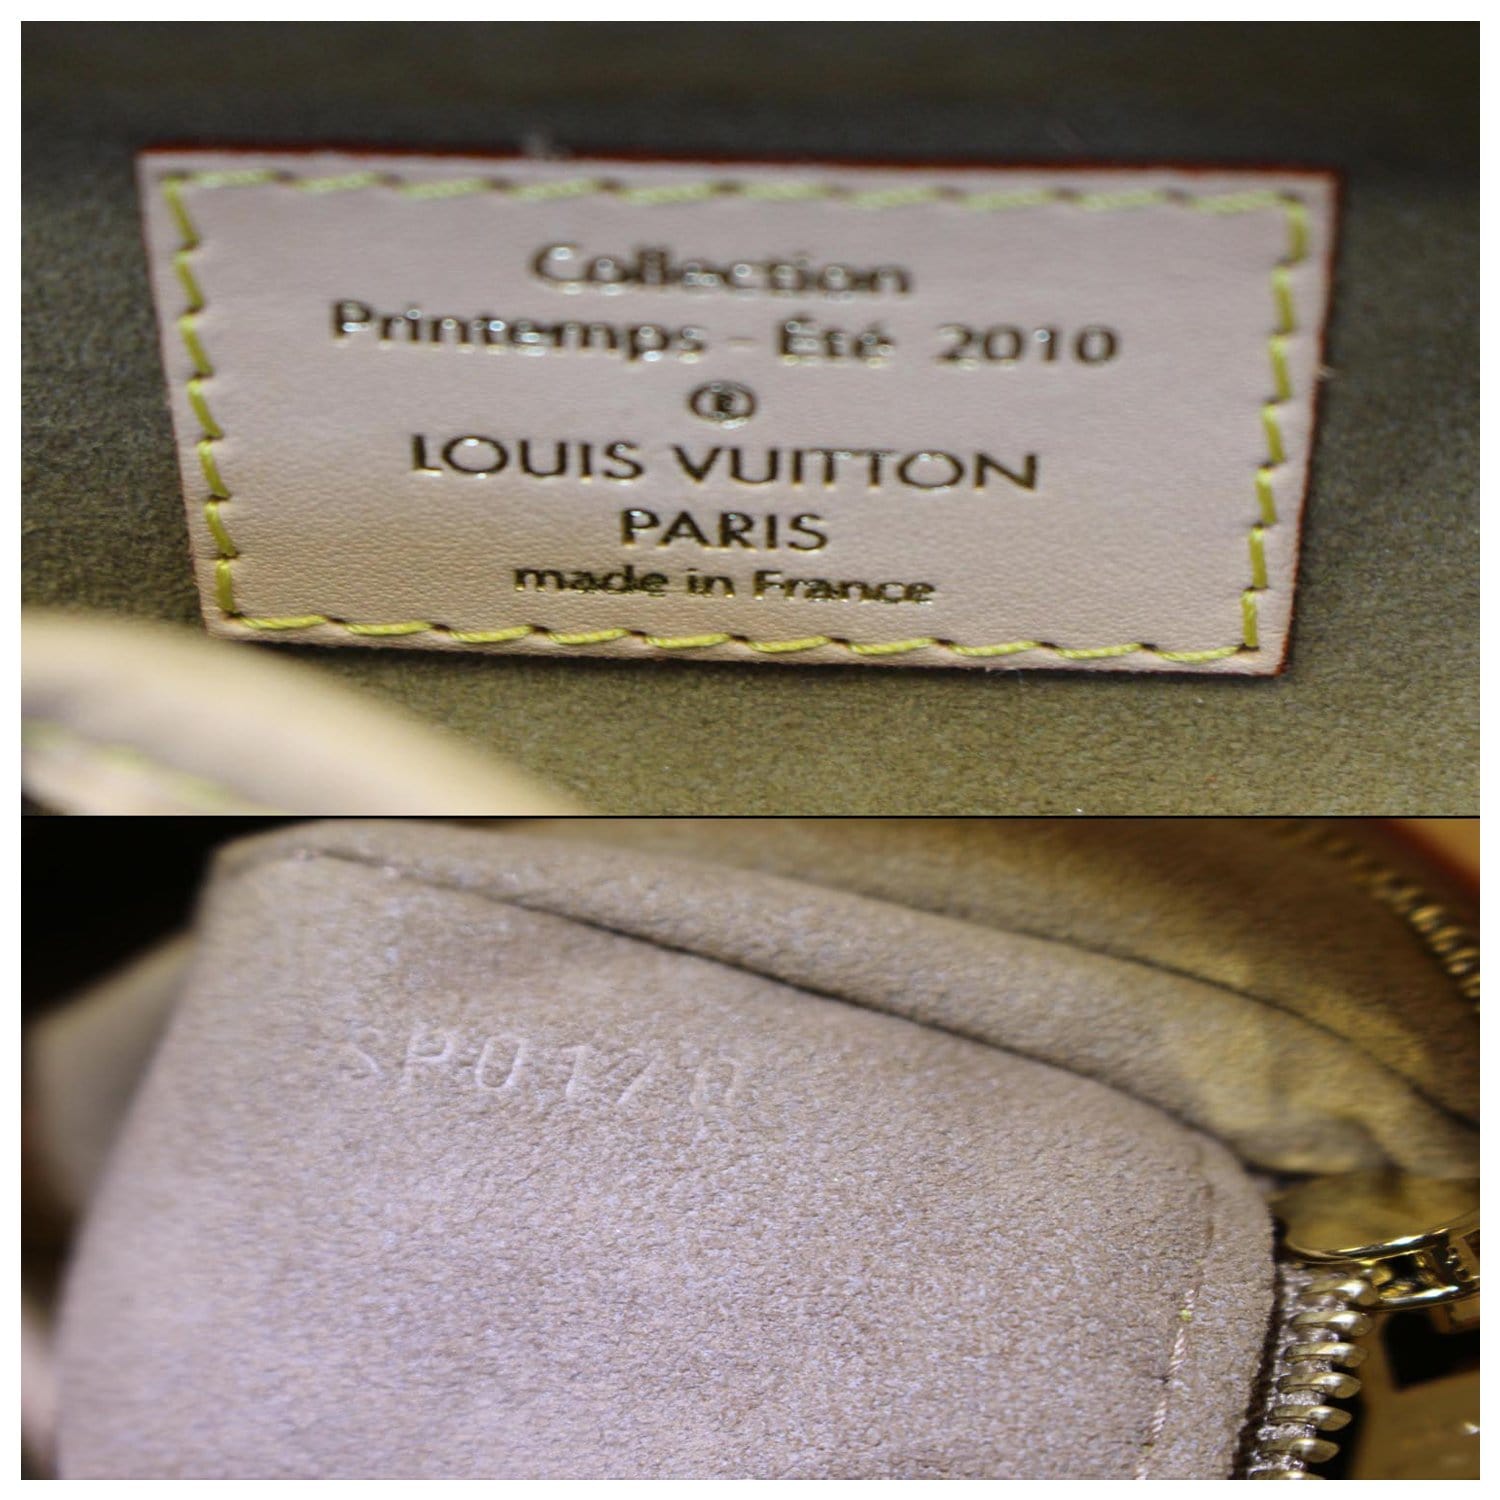 Louis Vuitton printemps 2010 tote bag